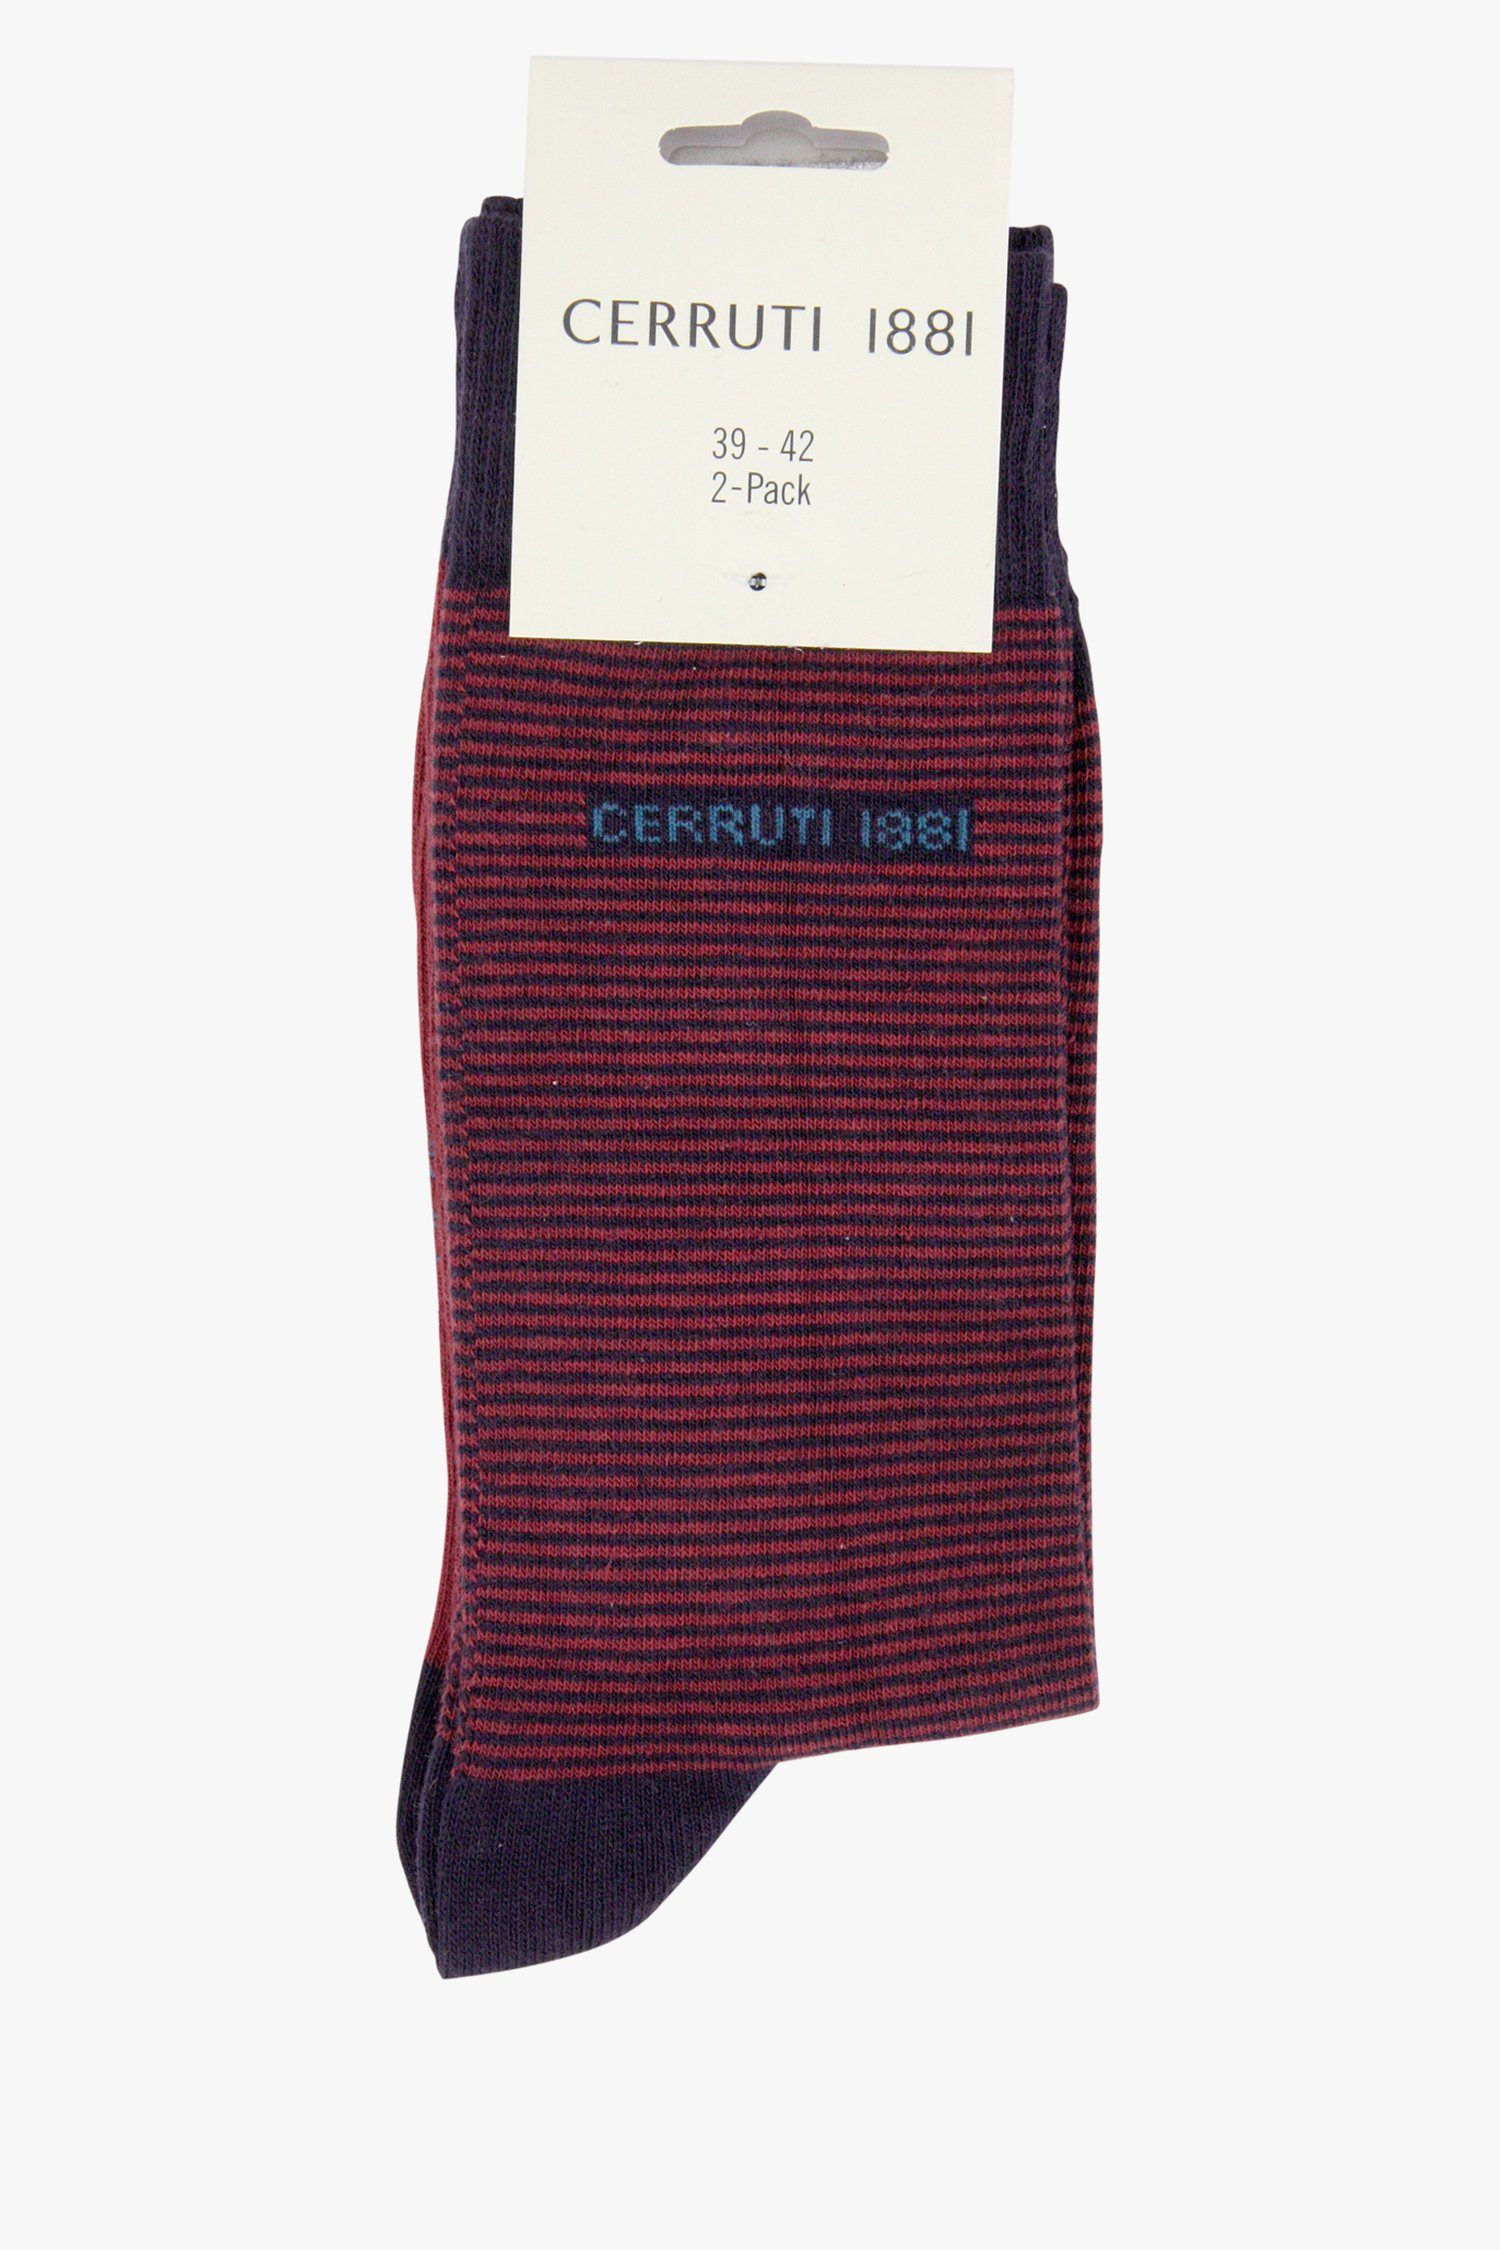 Bordeaux-navy sokken - 2 pack van Cerruti 1881 voor Heren